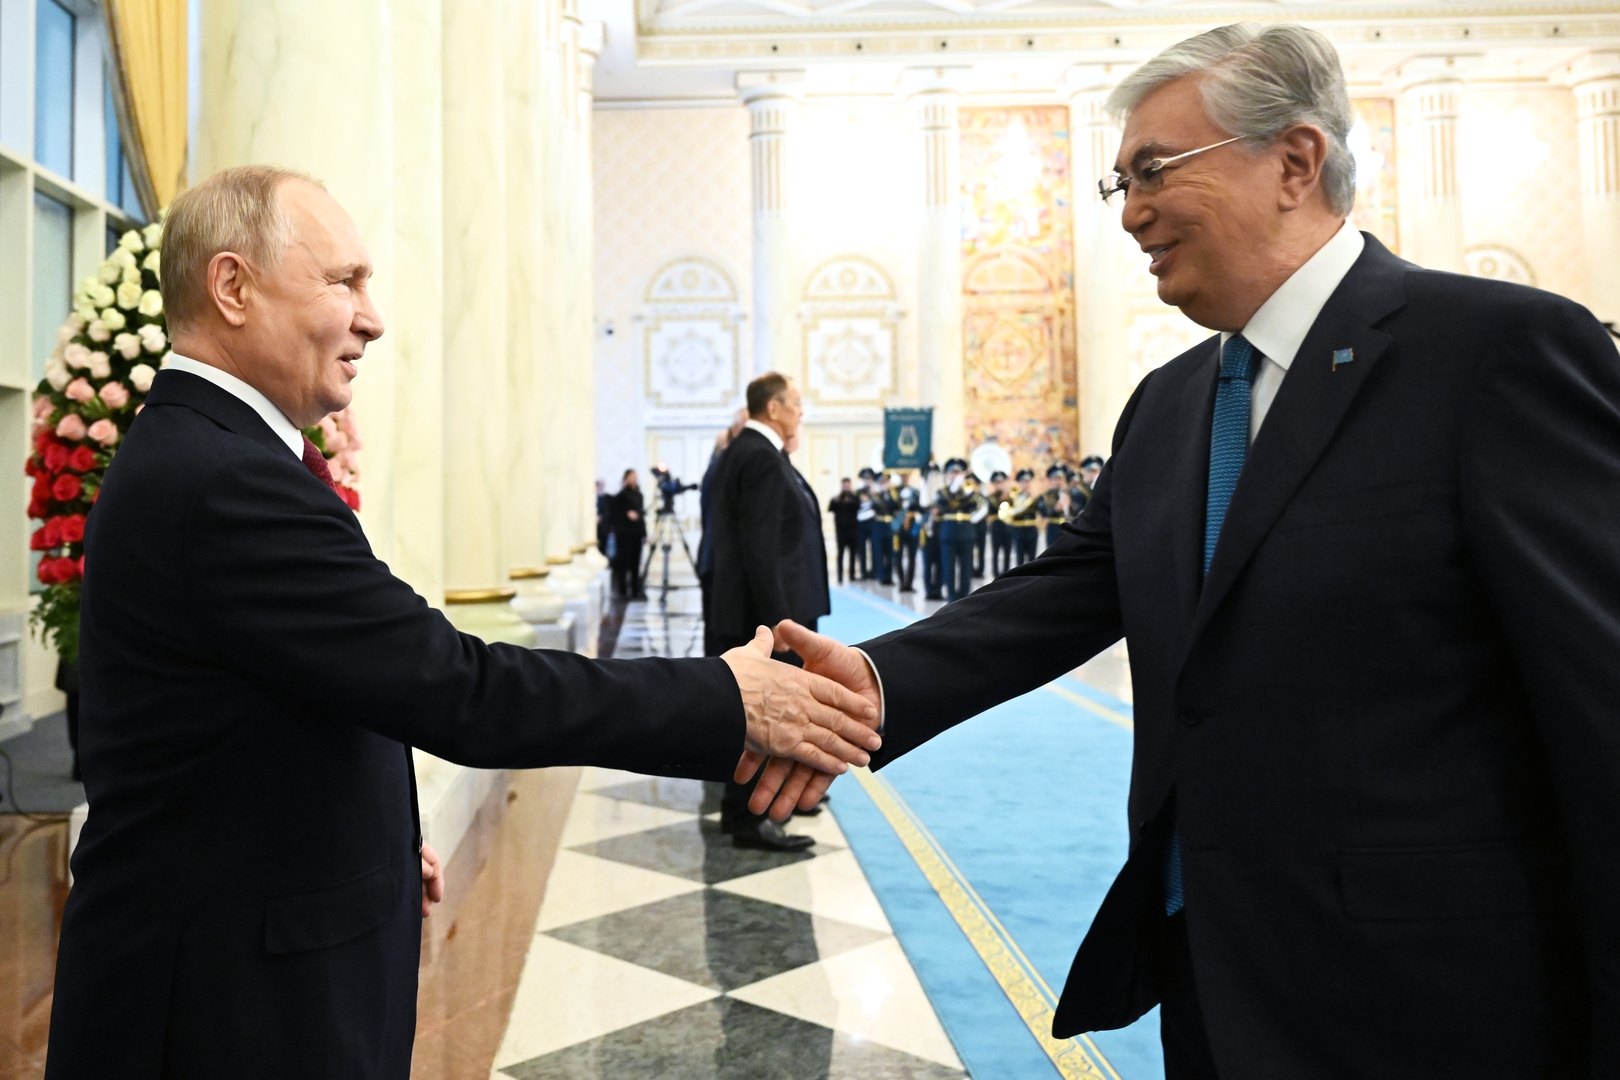 بالأرقام.. بوتين وتوكايف يؤكدان استراتيجية العلاقات بين روسيا وكازاخستان